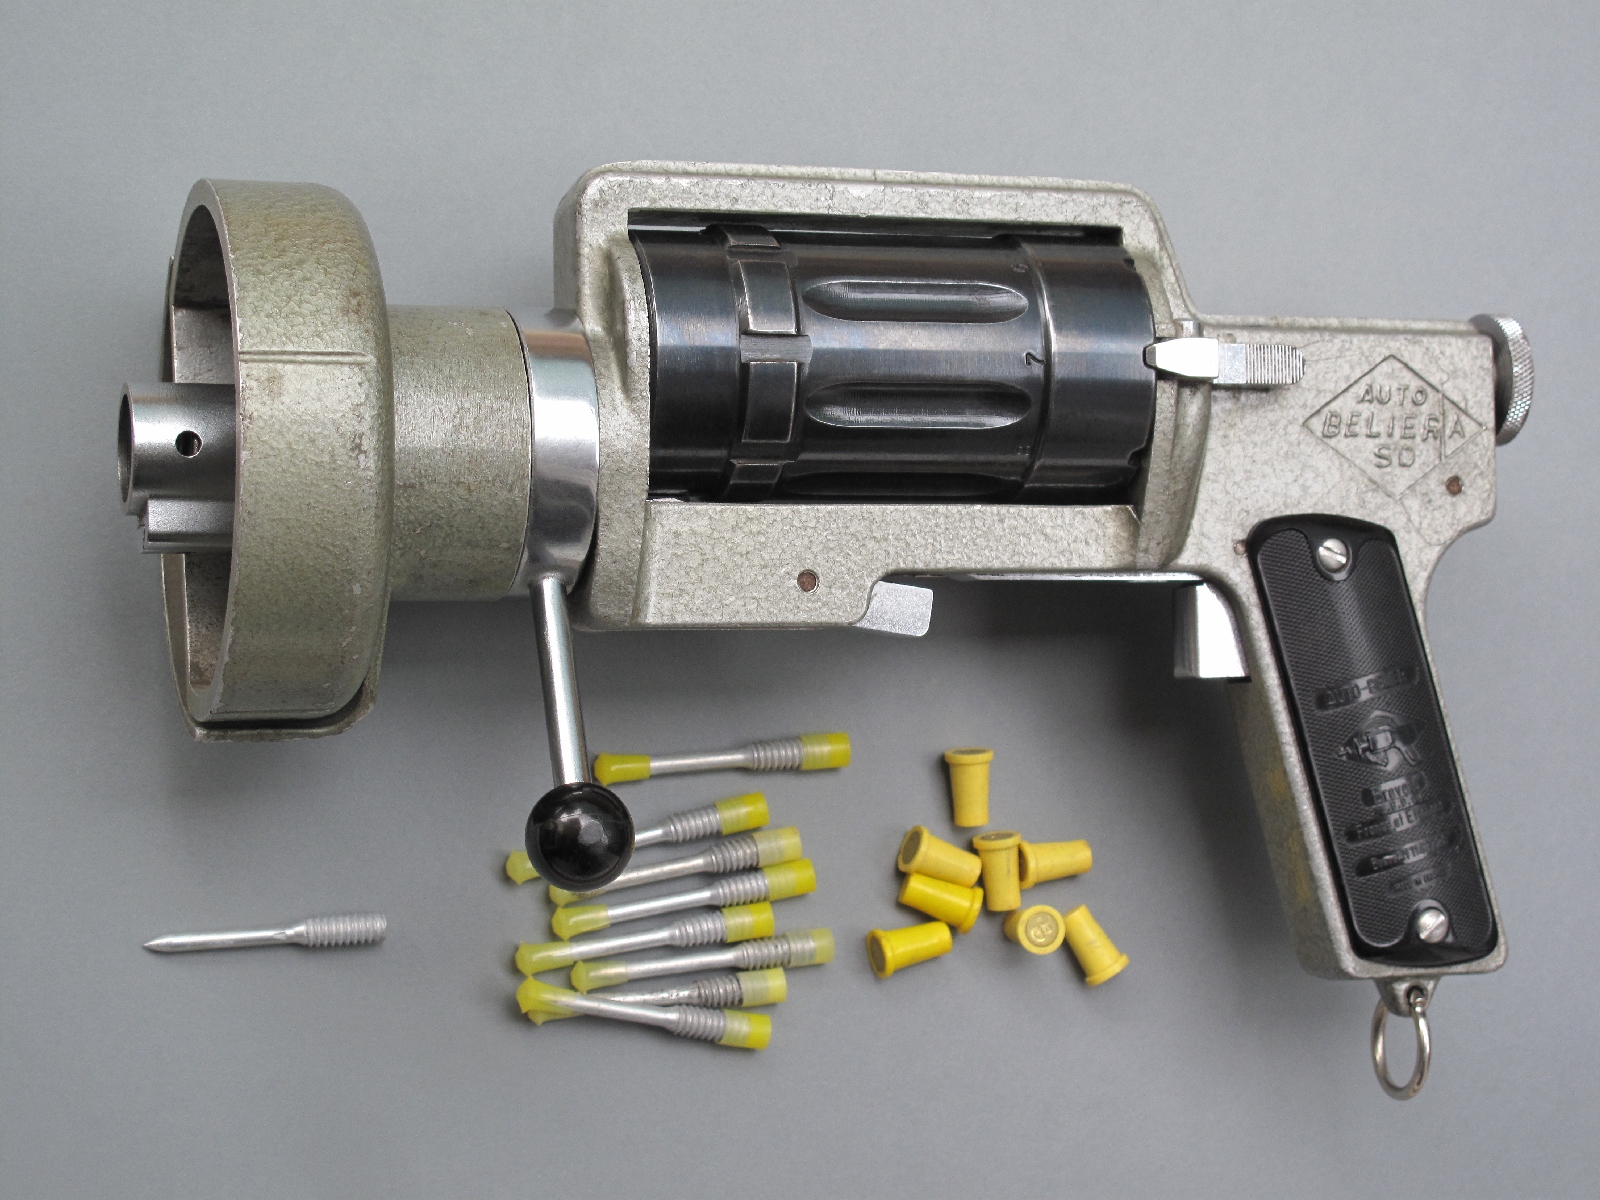 Pistolet de scellement Auto-Bélier modèle A, fabriqué dans les années 1960 par la société française S.A.S.S.E. (Société d’Appareils de Scellement de Saint-Etienne). Sa longueur est de 29 cm, pour un poids à vide de 2,800 kg.